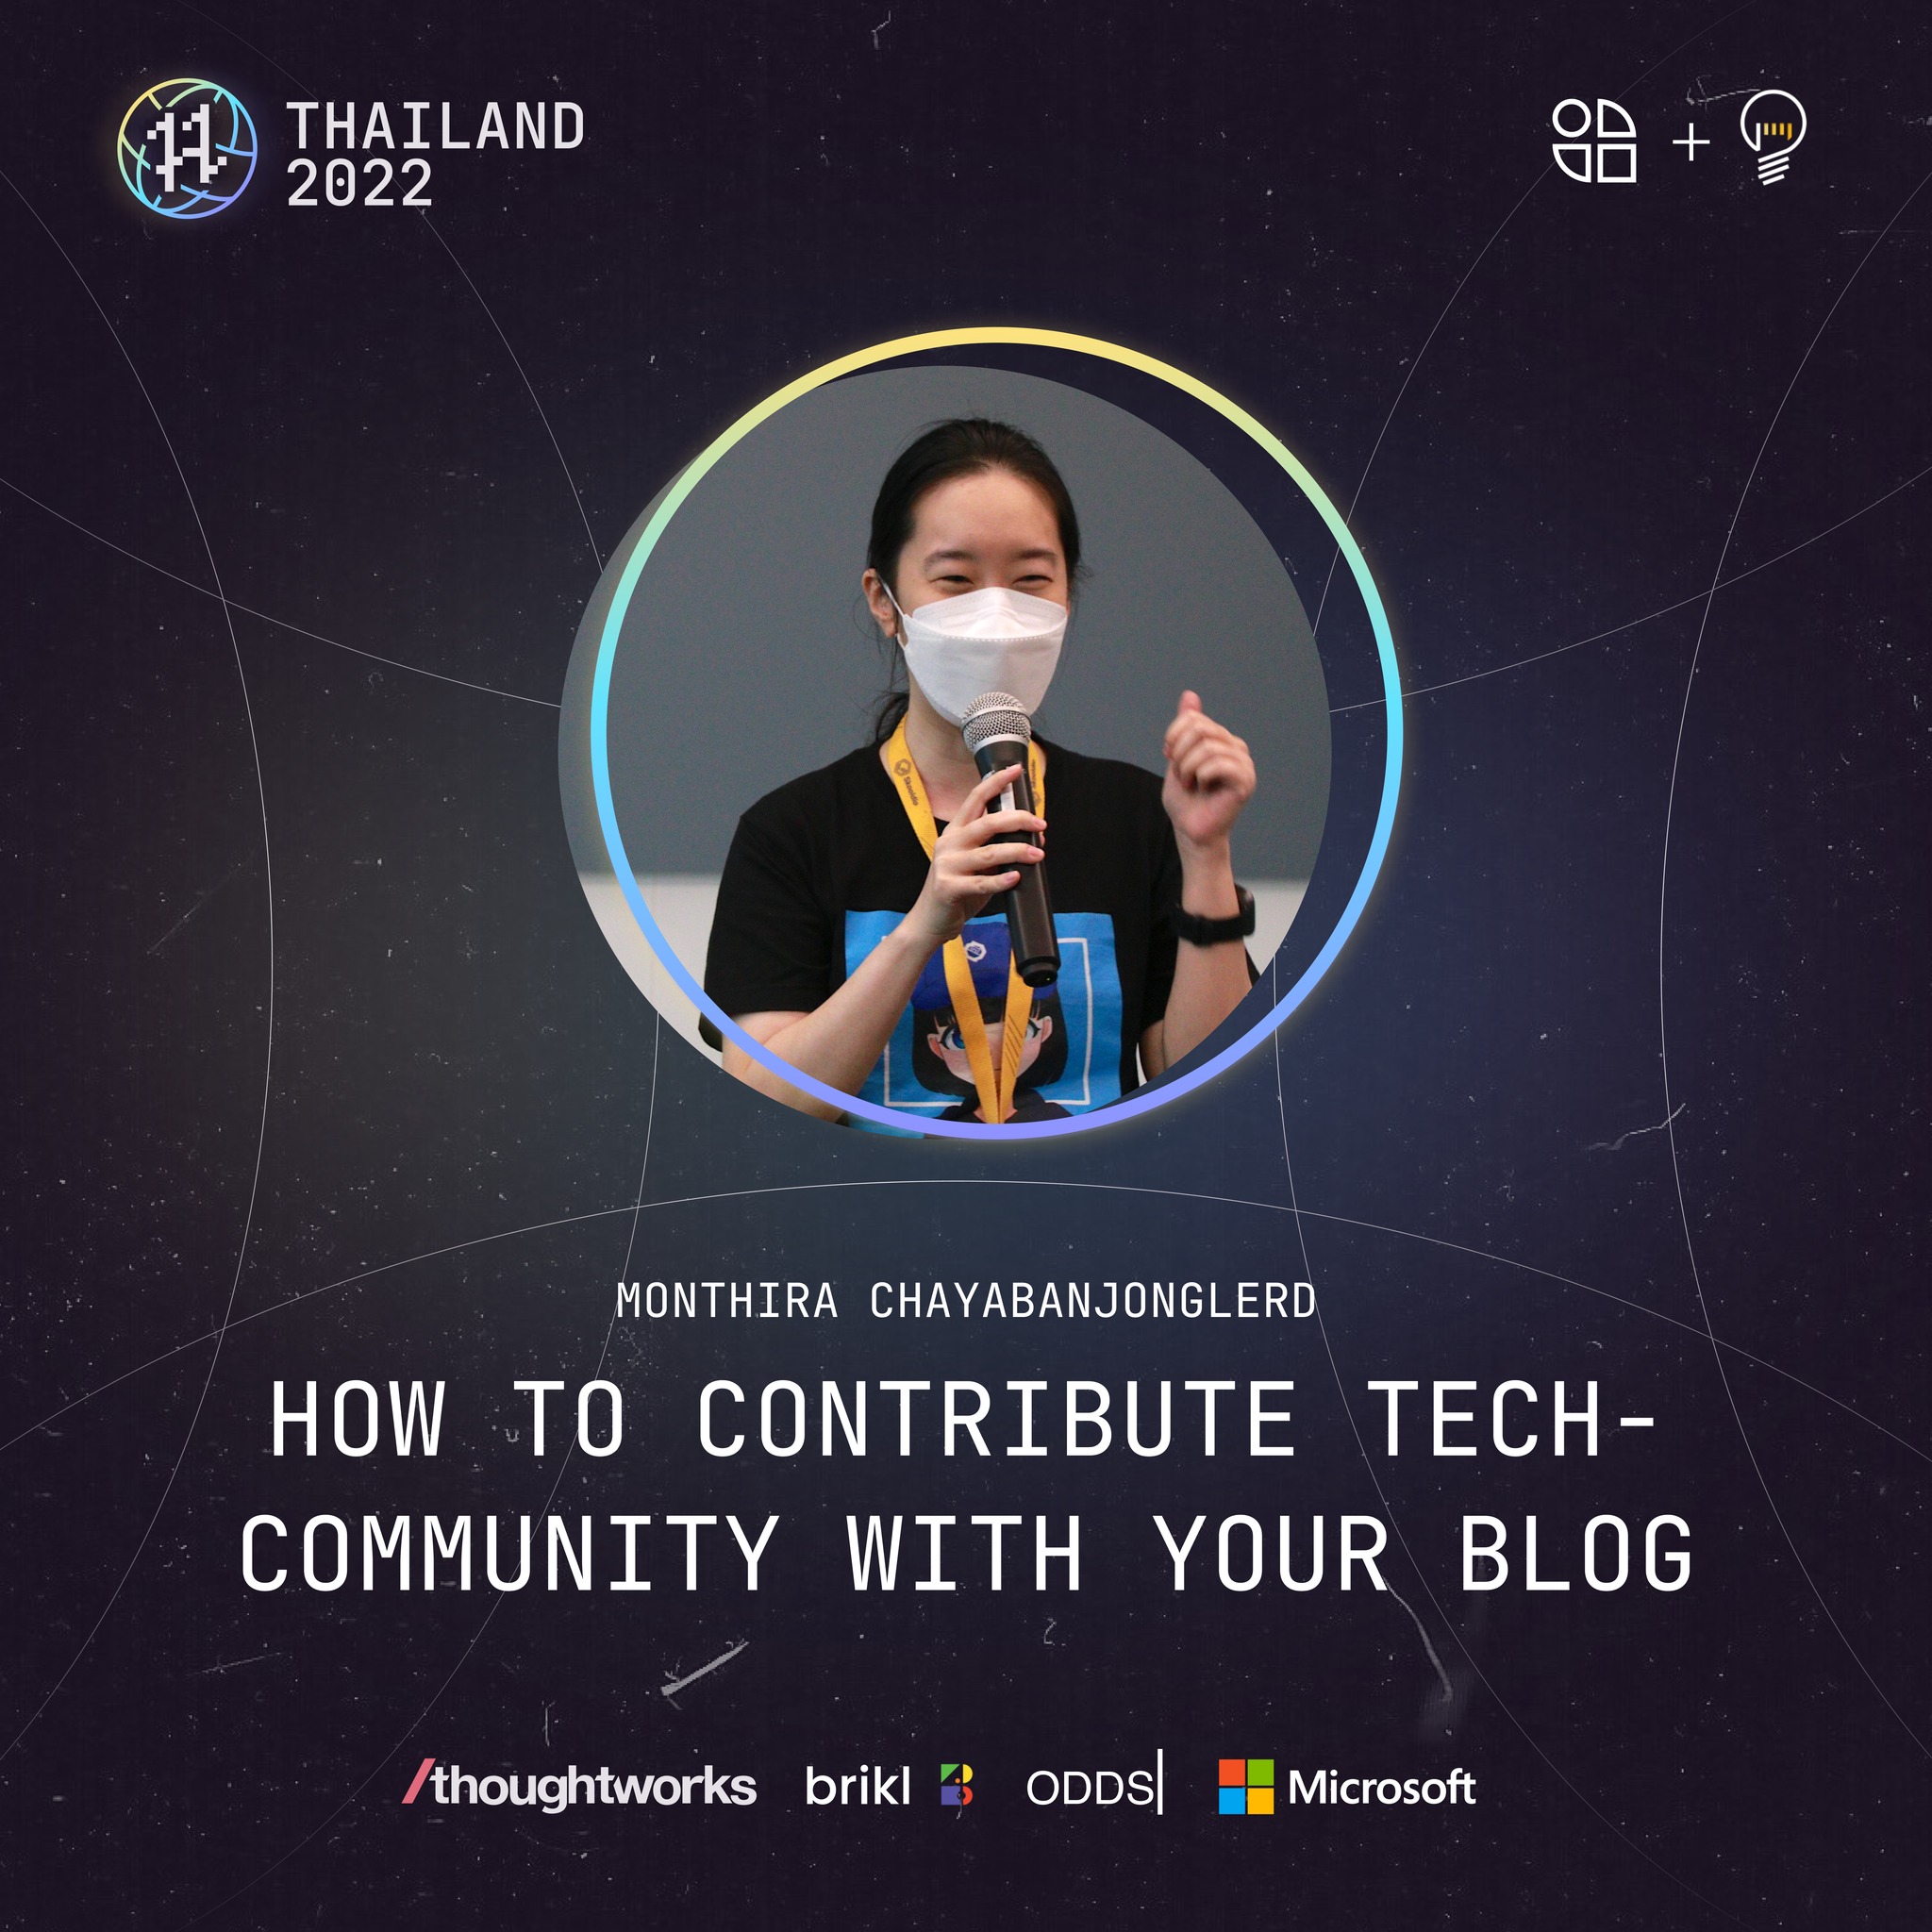 Hacktoberfest Thailand 2022